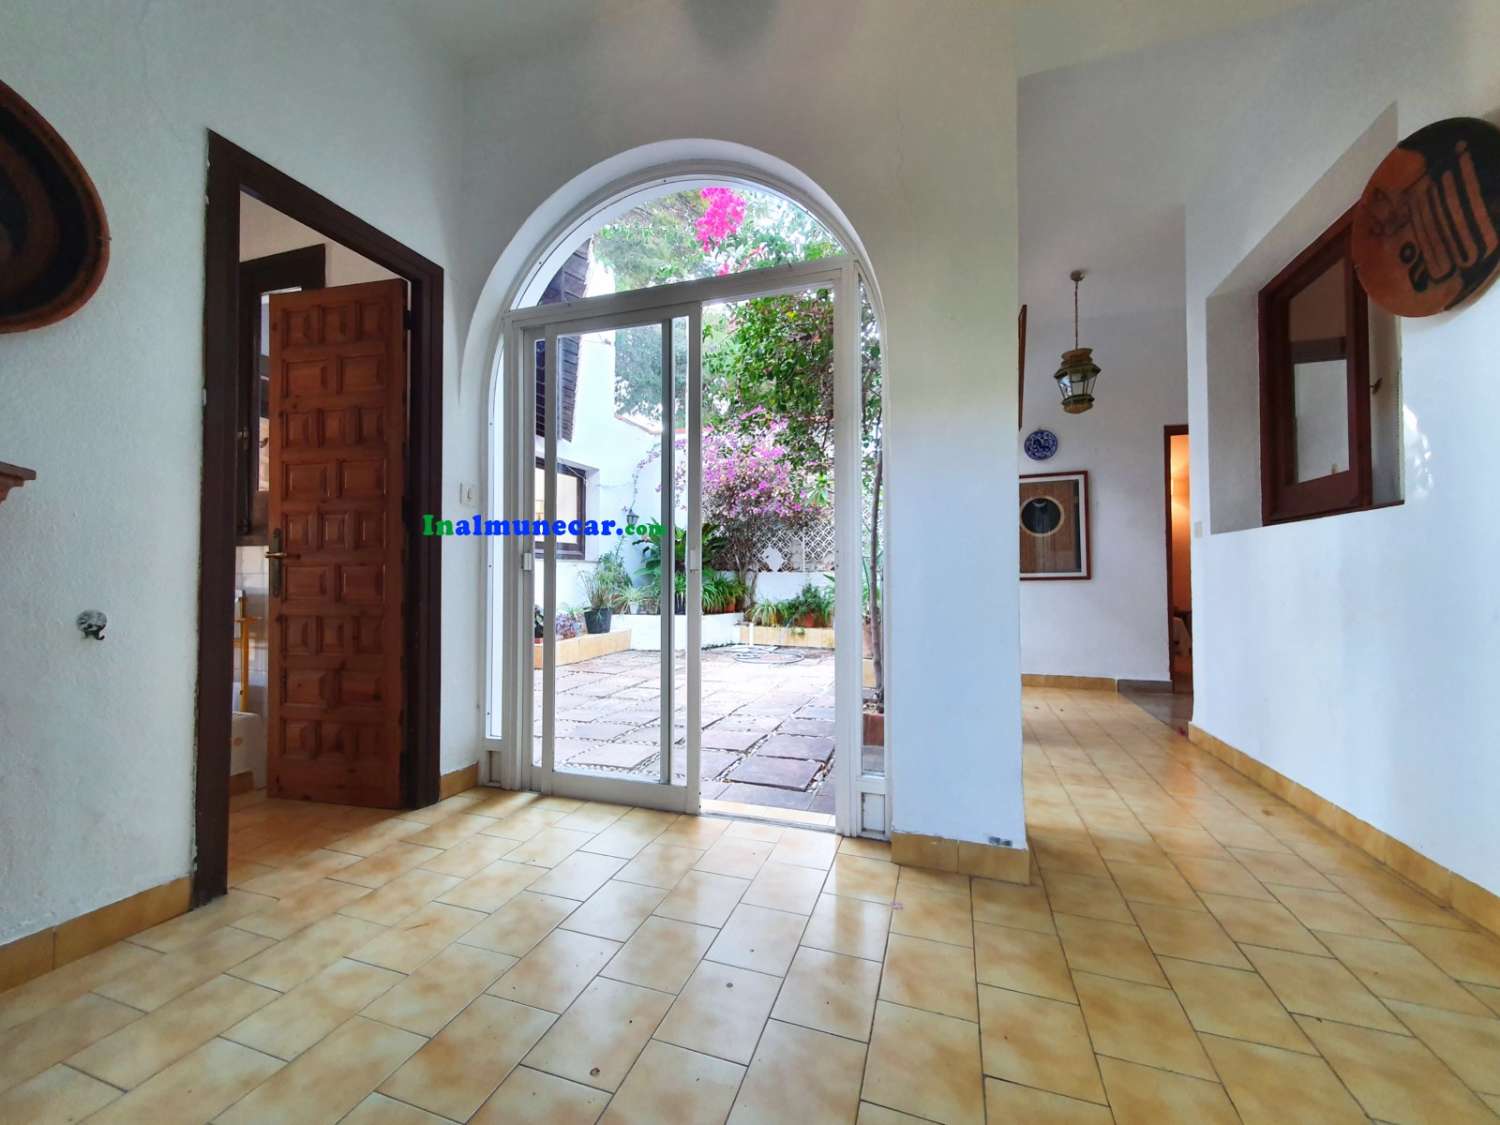 Exclusive bohemian villa for sale in Cotobro - Almuñécar, with amazing location and views.